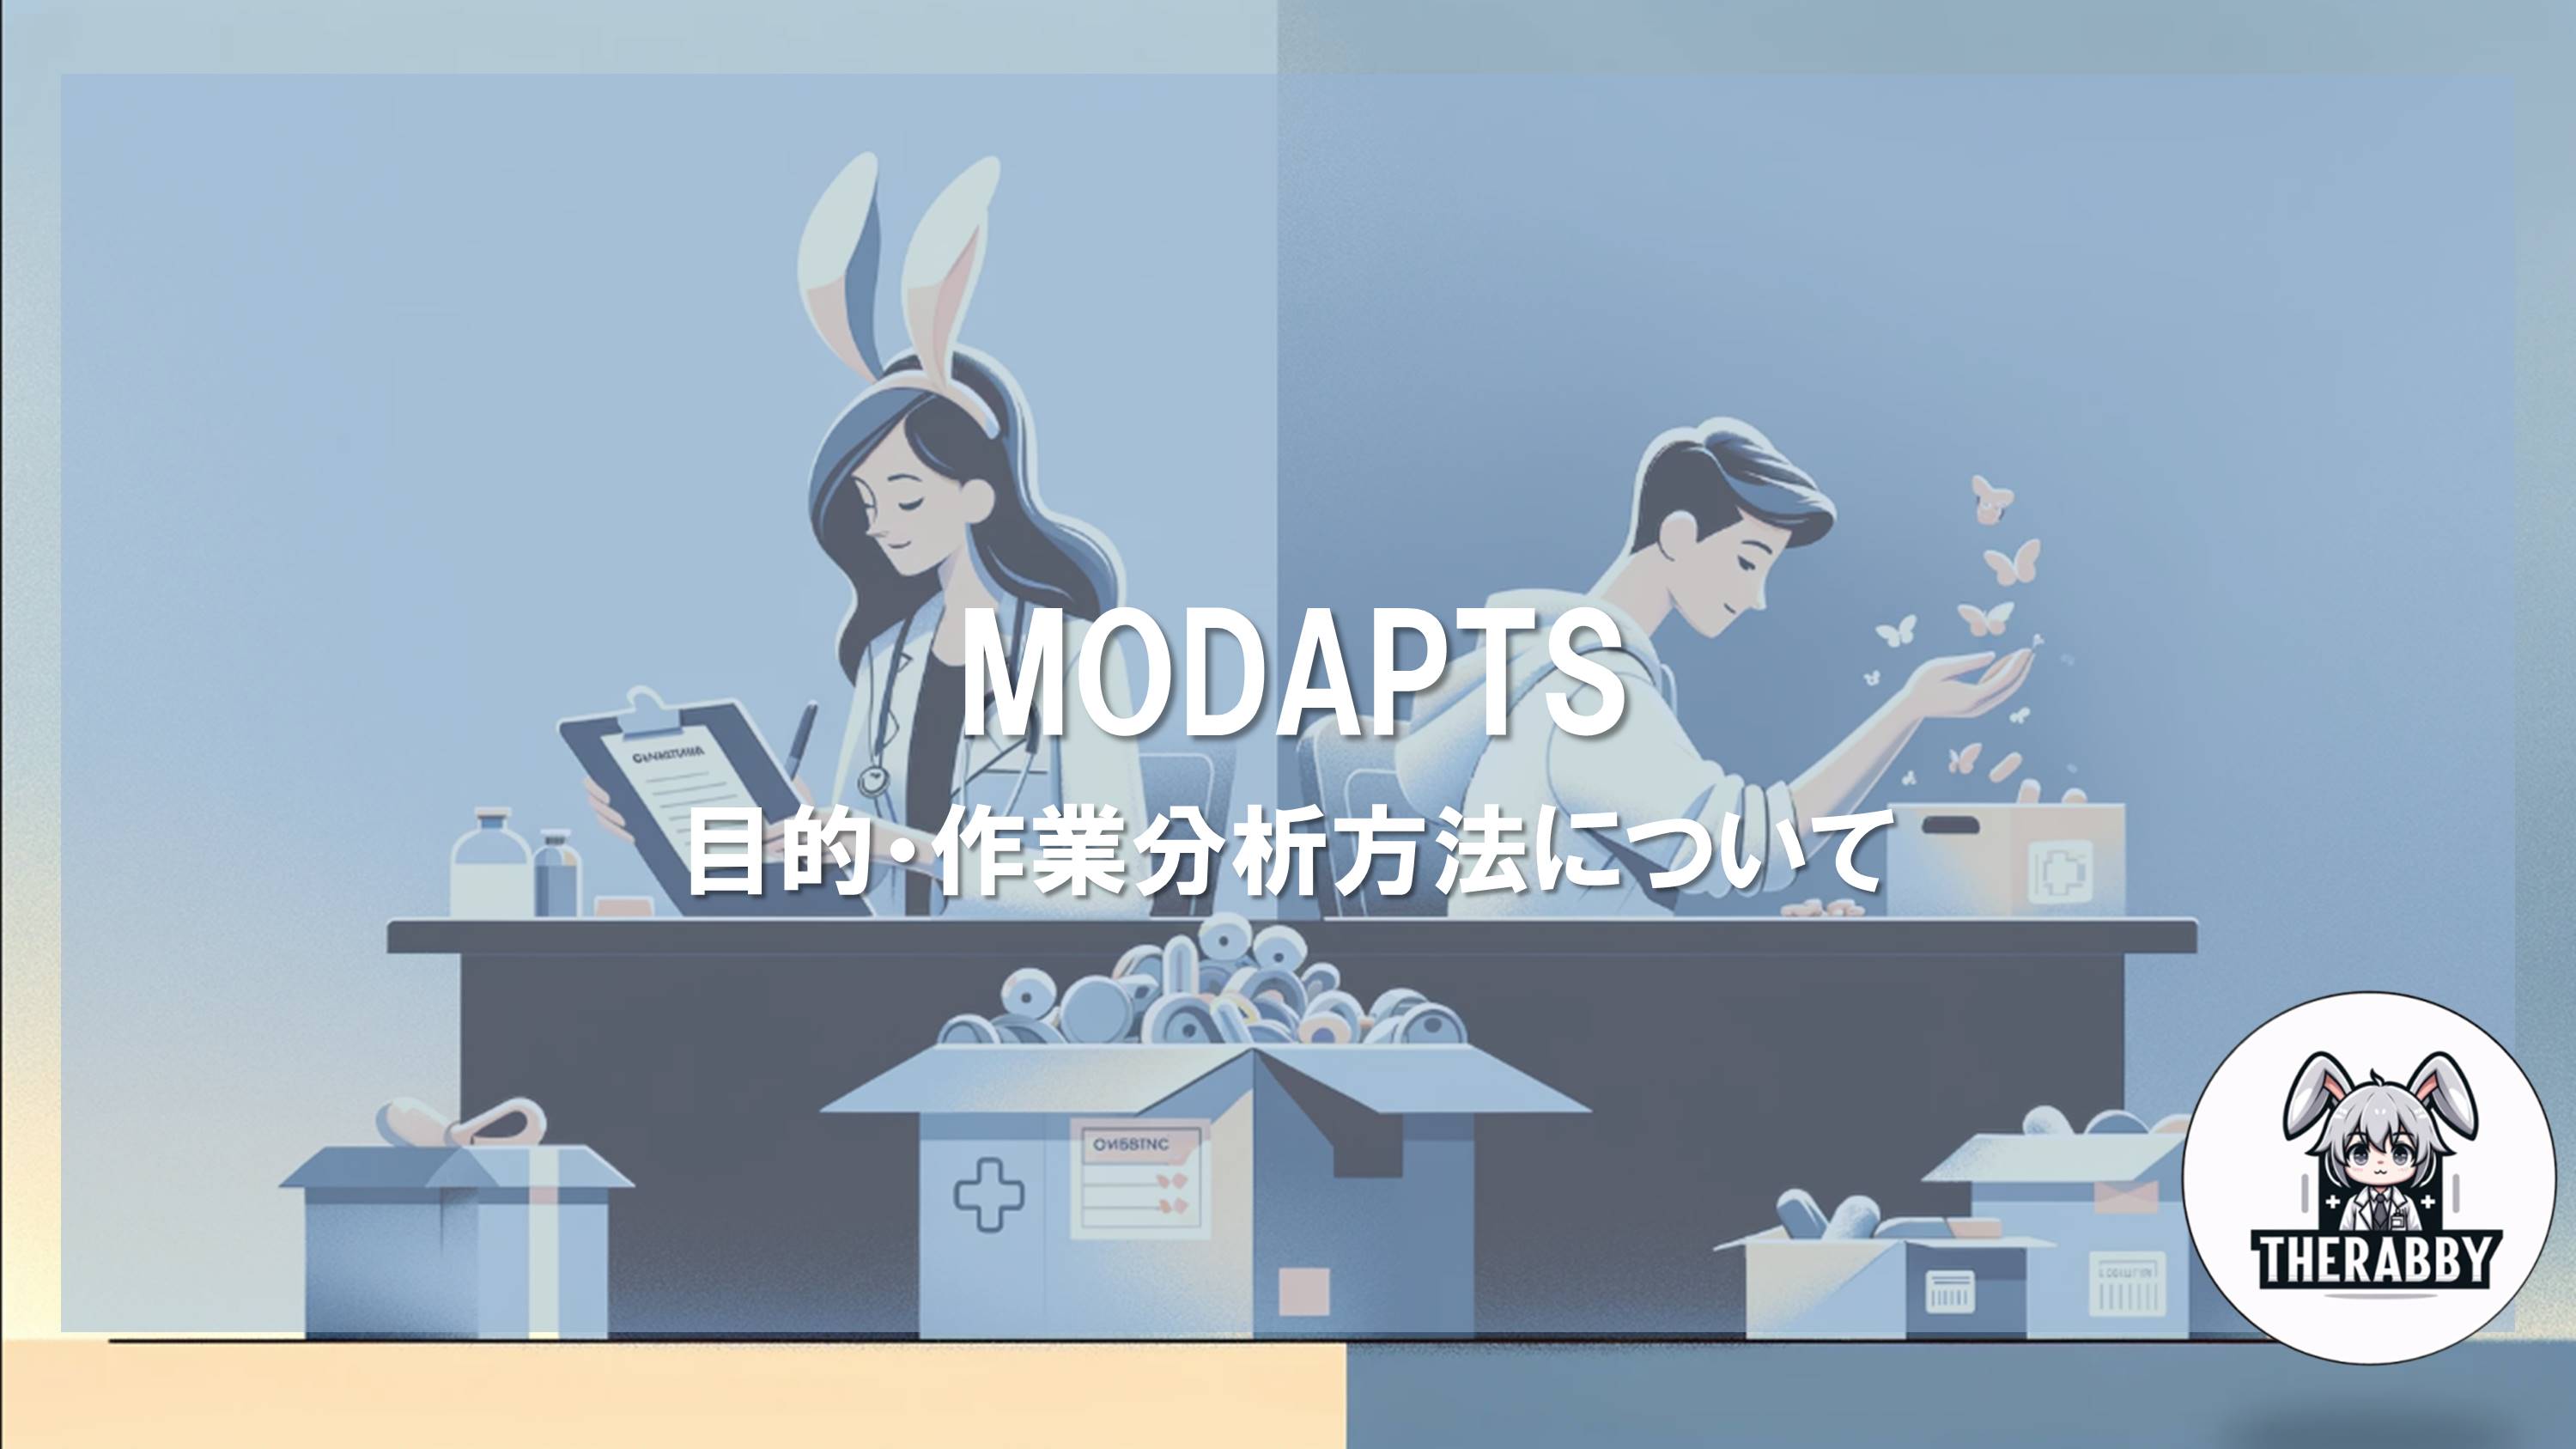 MODAPTS - 目的・作業分析方法について